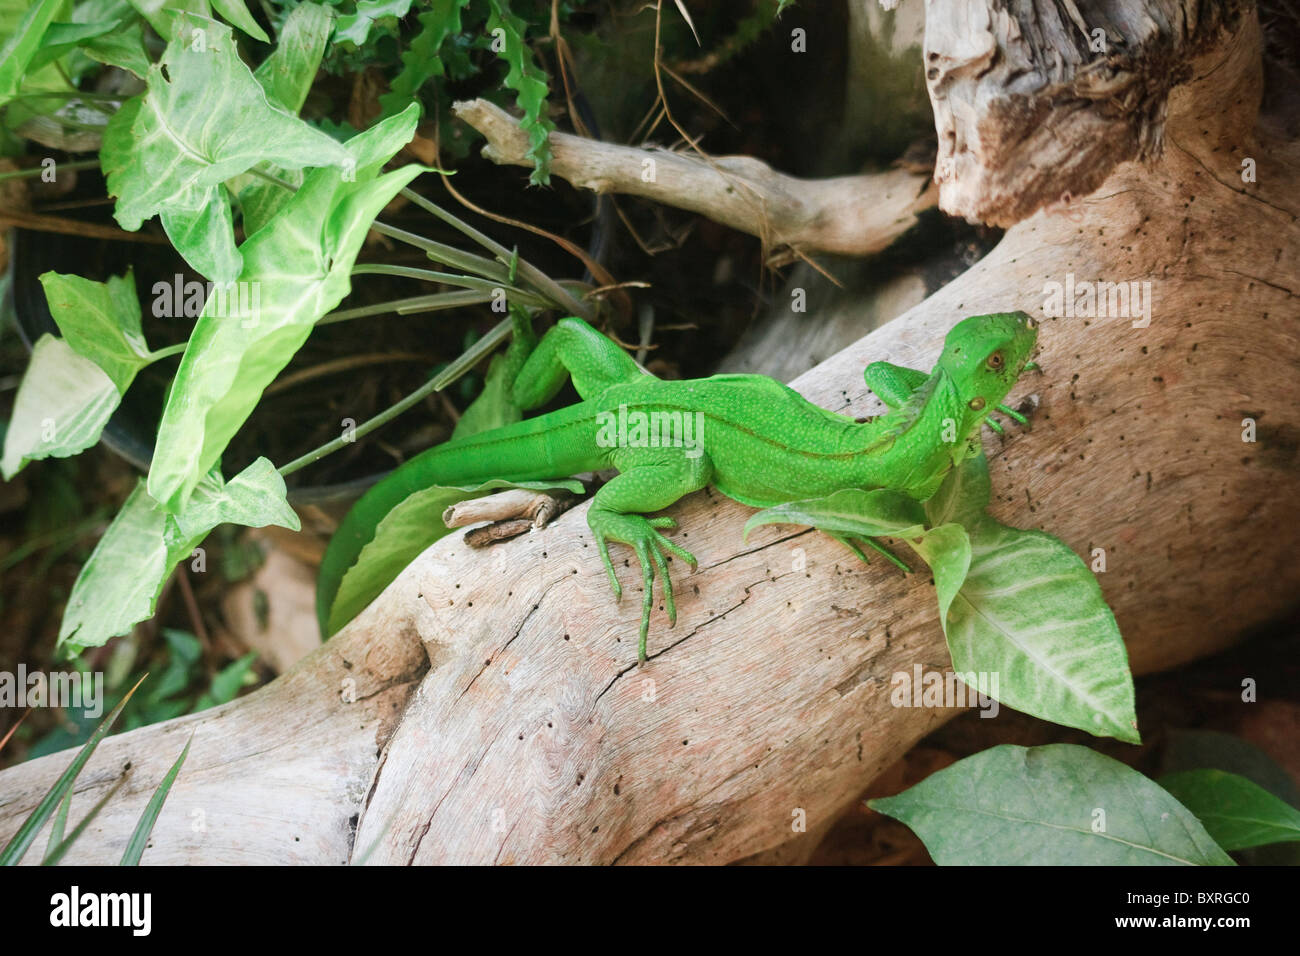 Green iguana on a guava tree, Trinidad Stock Photo